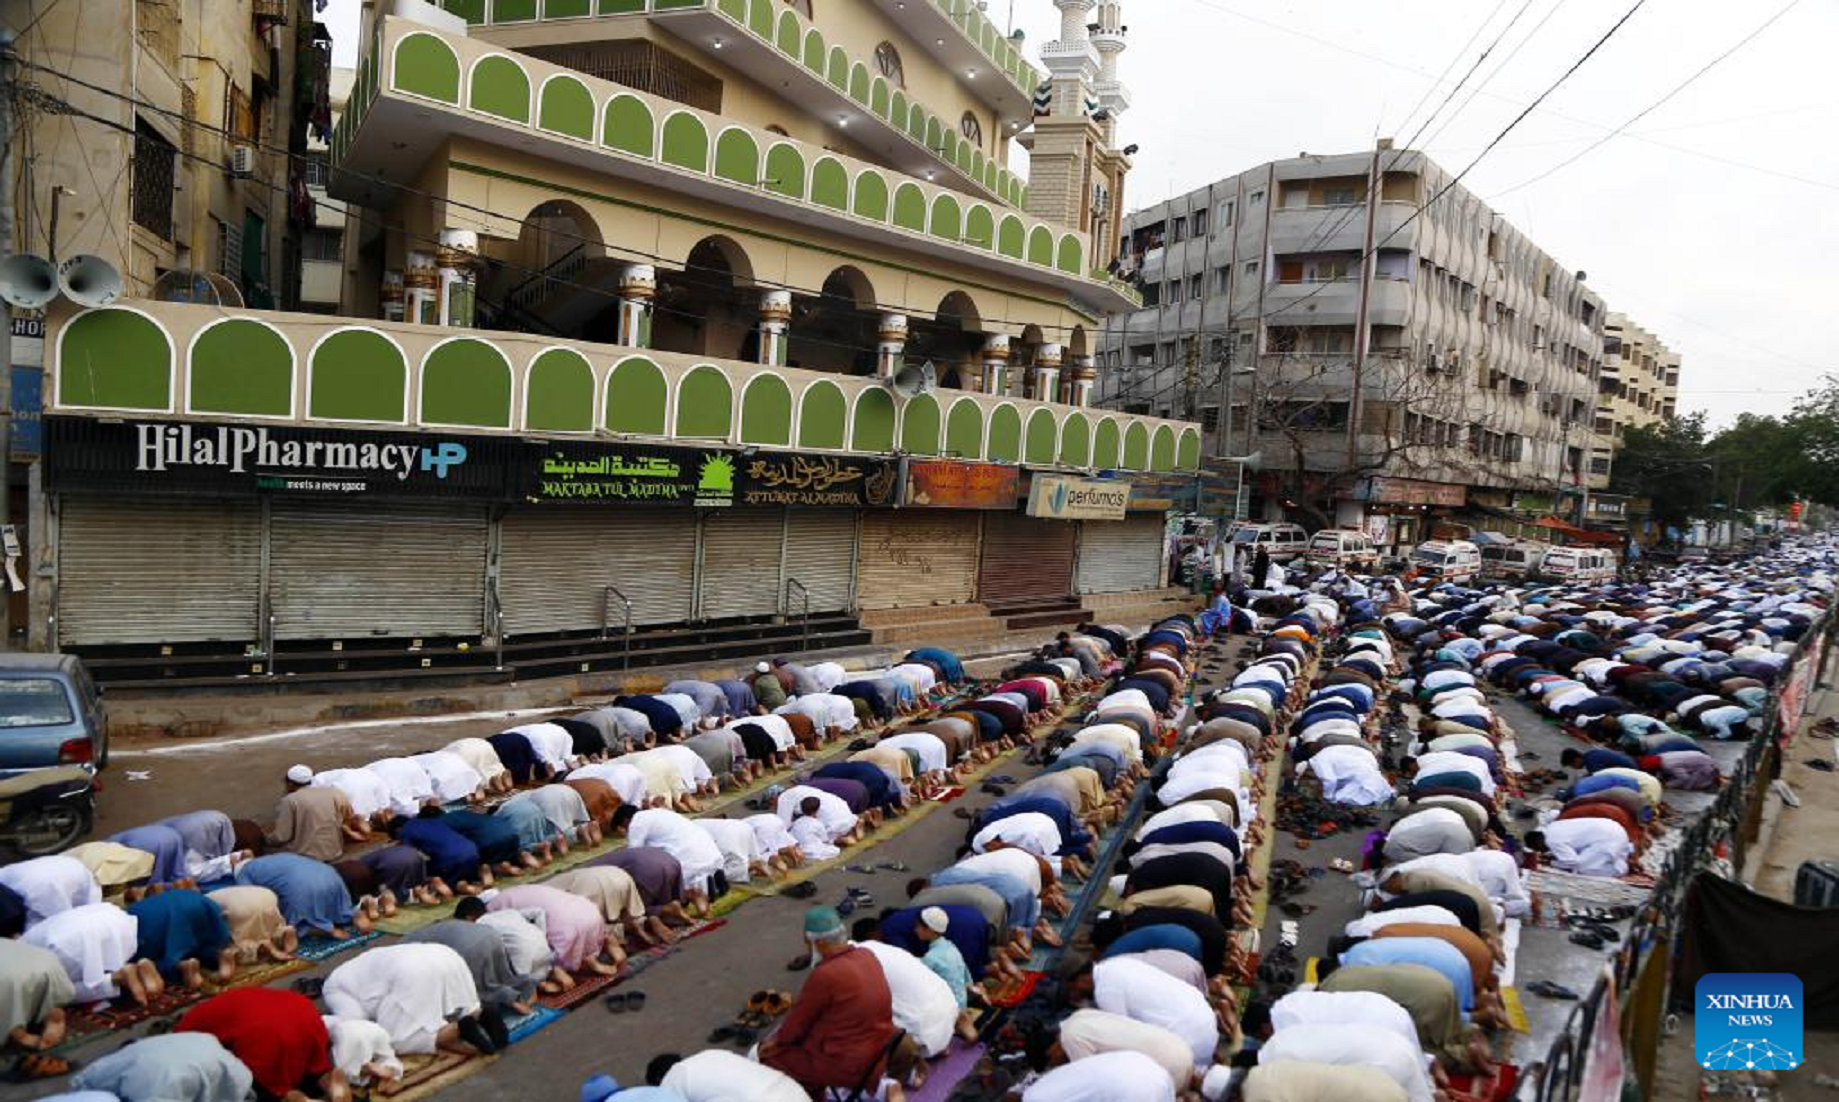 Feature: Eid Al-Fitr Celebrations In Pakistan In Full Swing As COVID-19 Threat Recedes